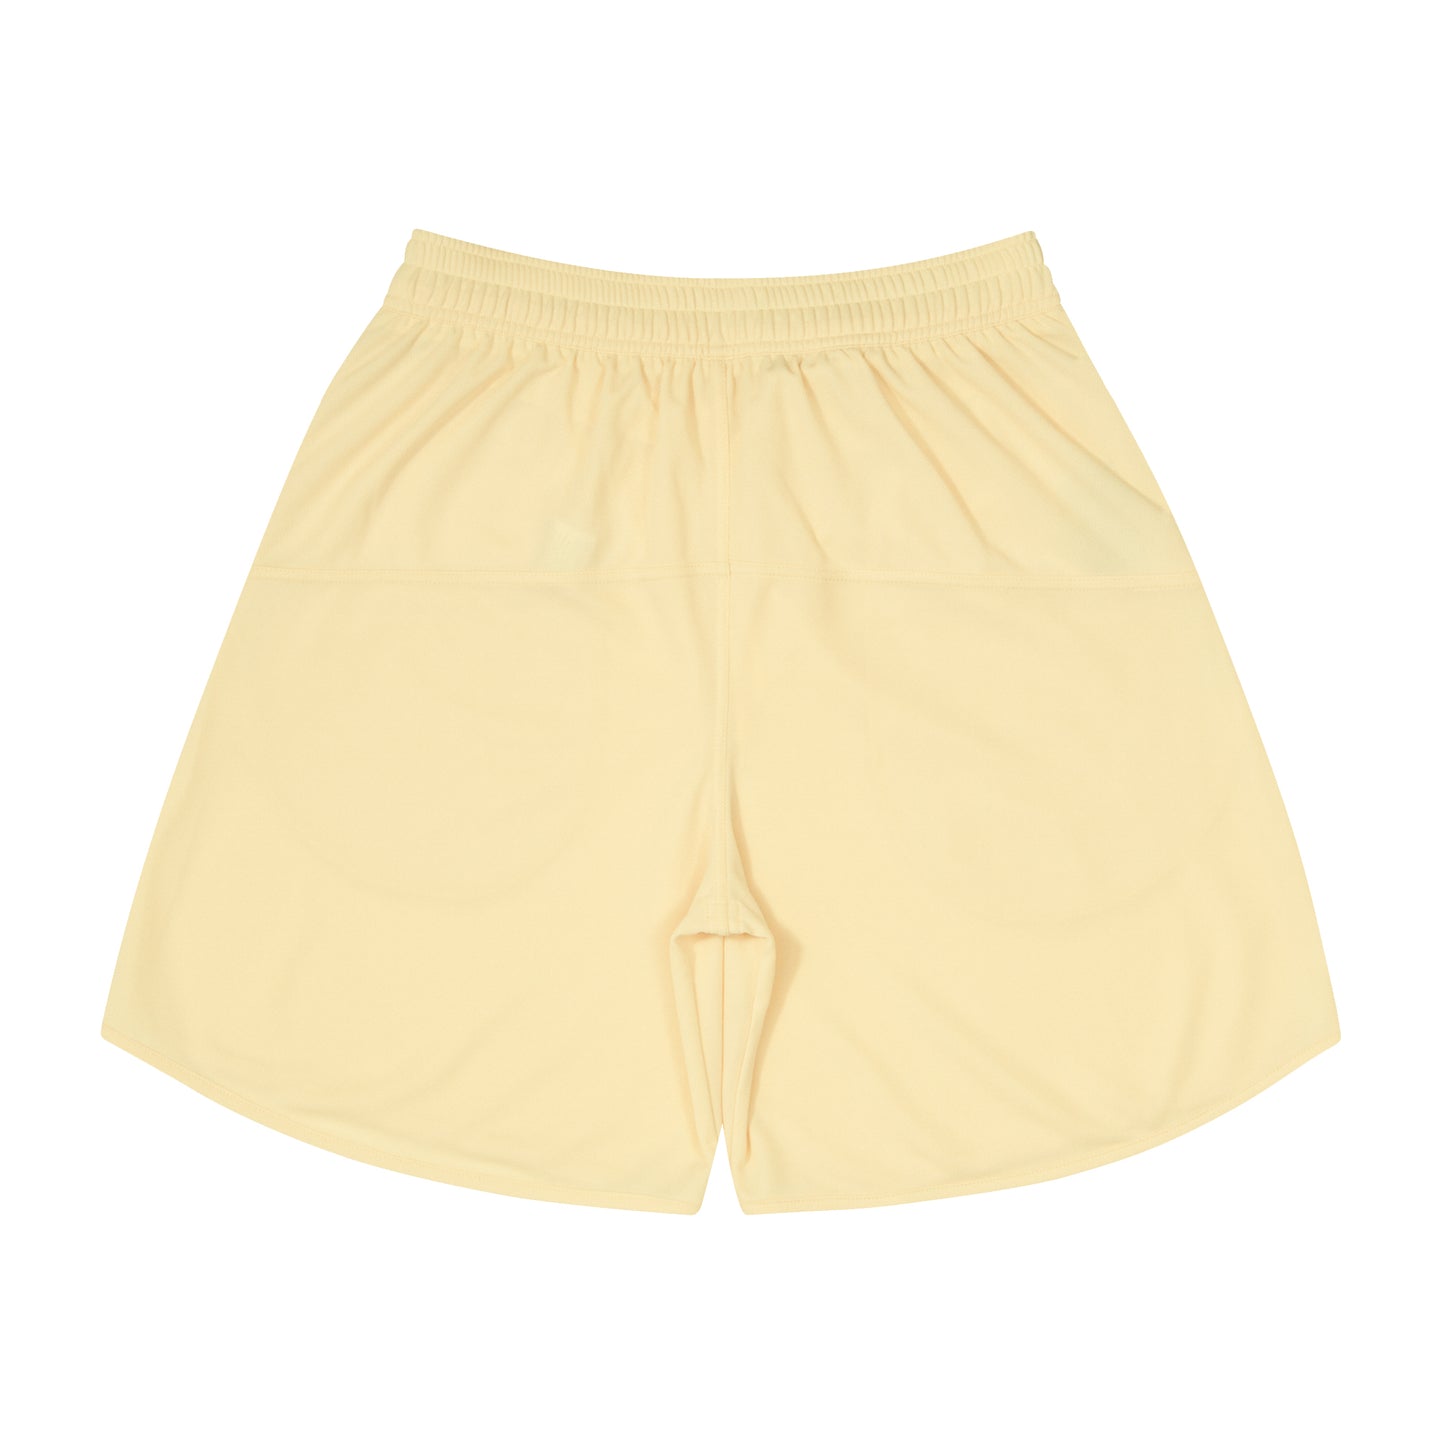 Basic Zip Shorts (lemon ice/white)